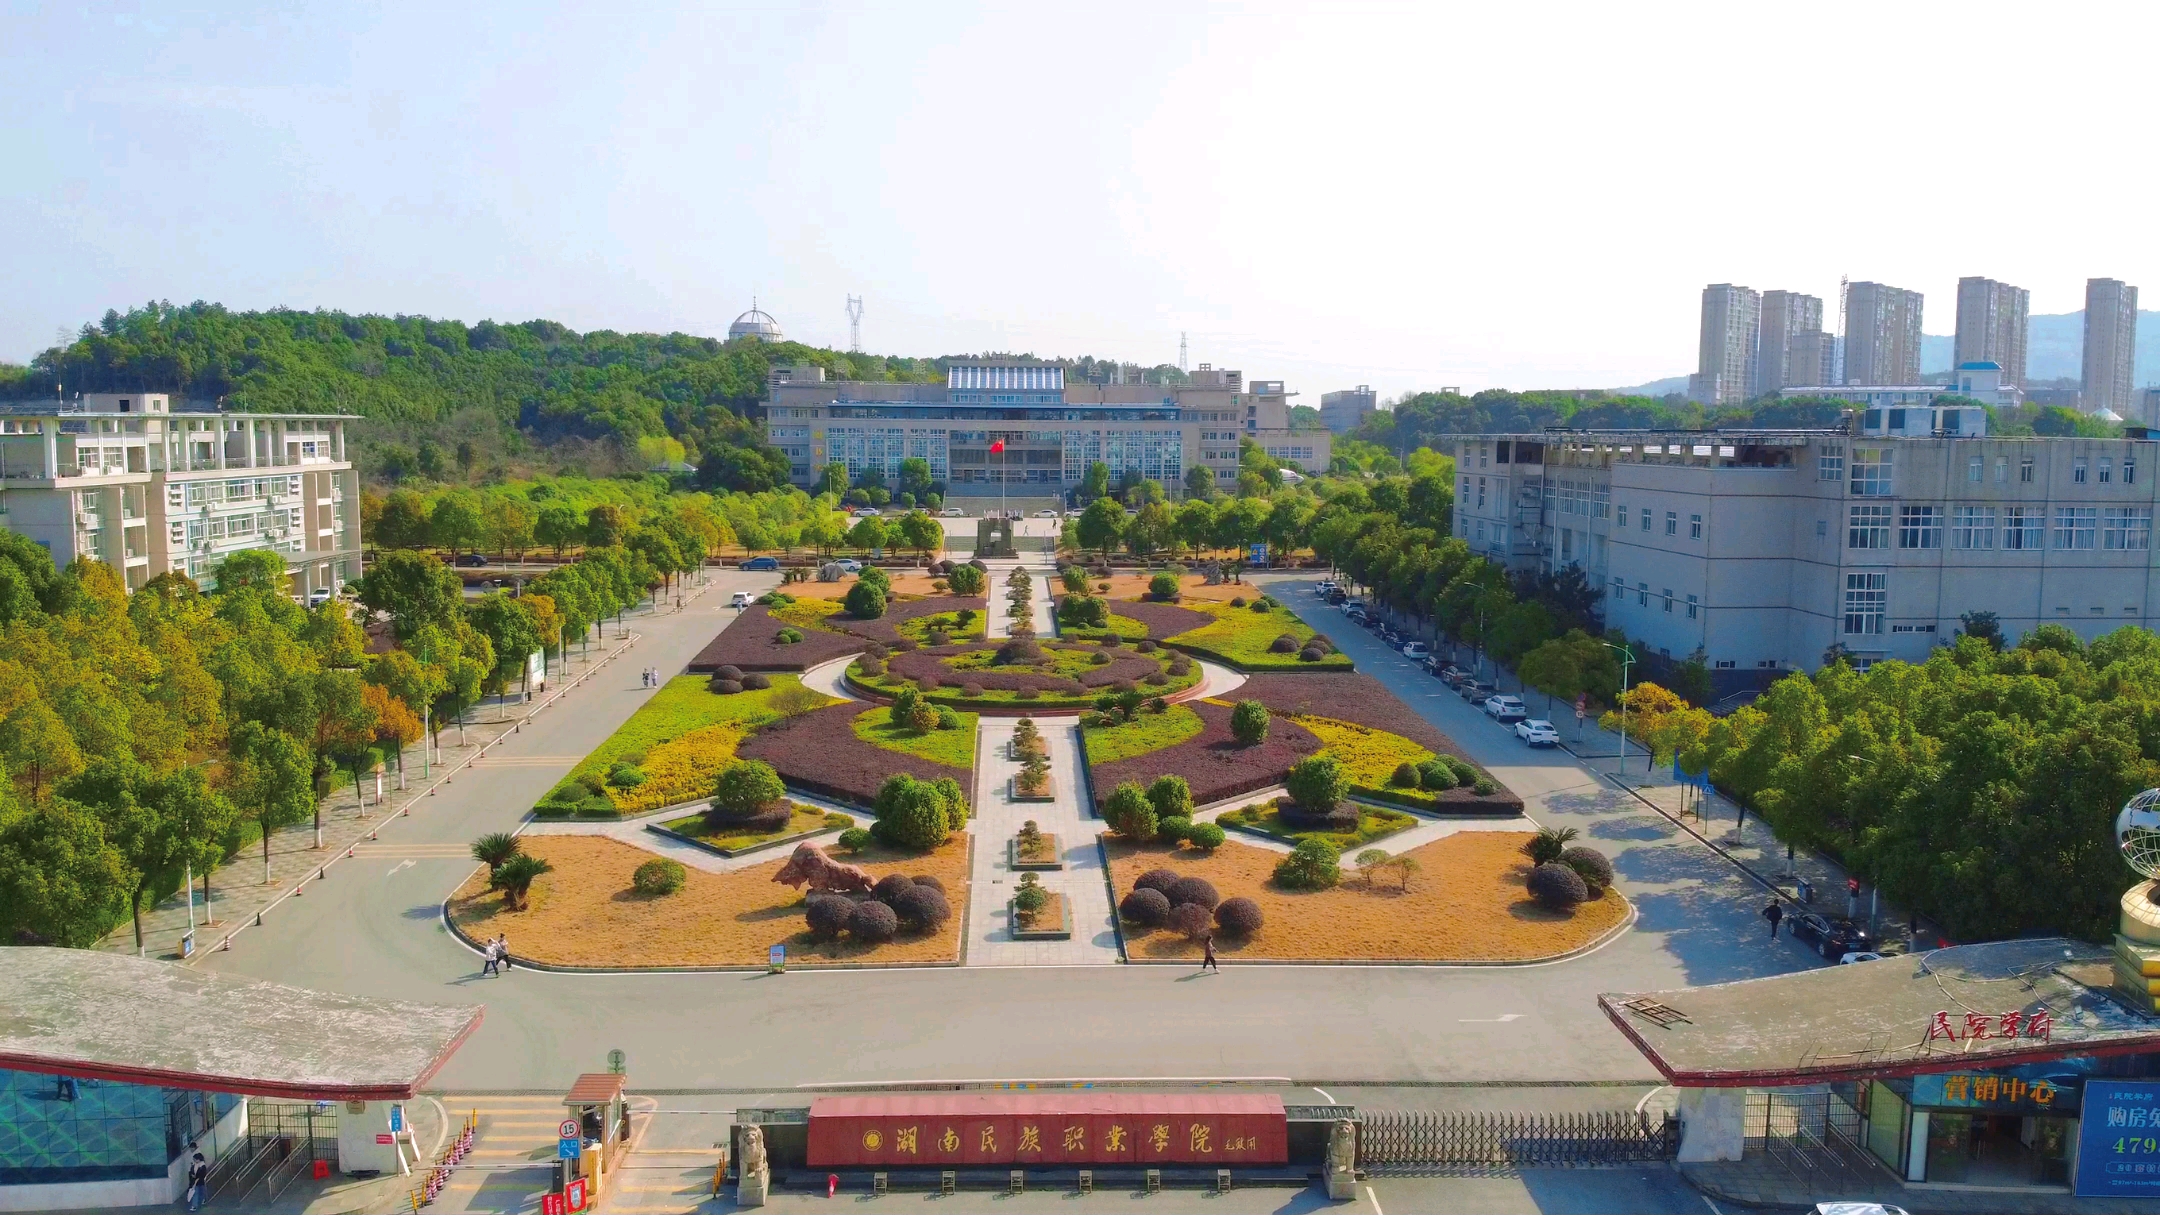 湖南民族职业学院景区图片